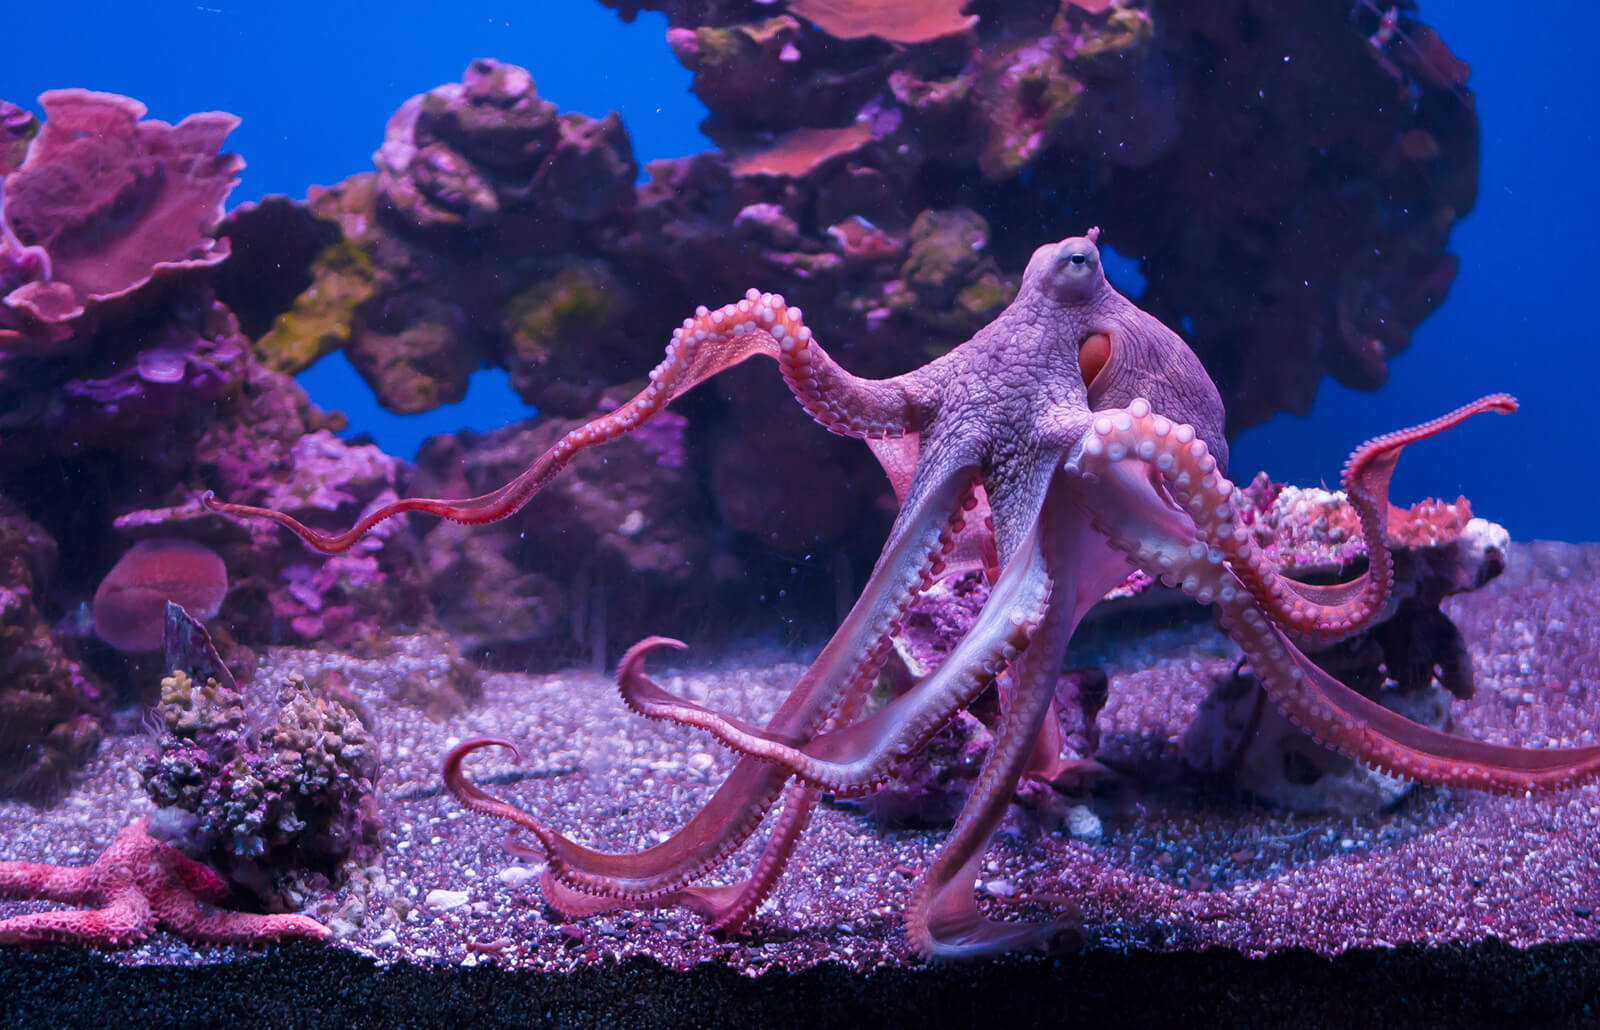 Types of unique octopus